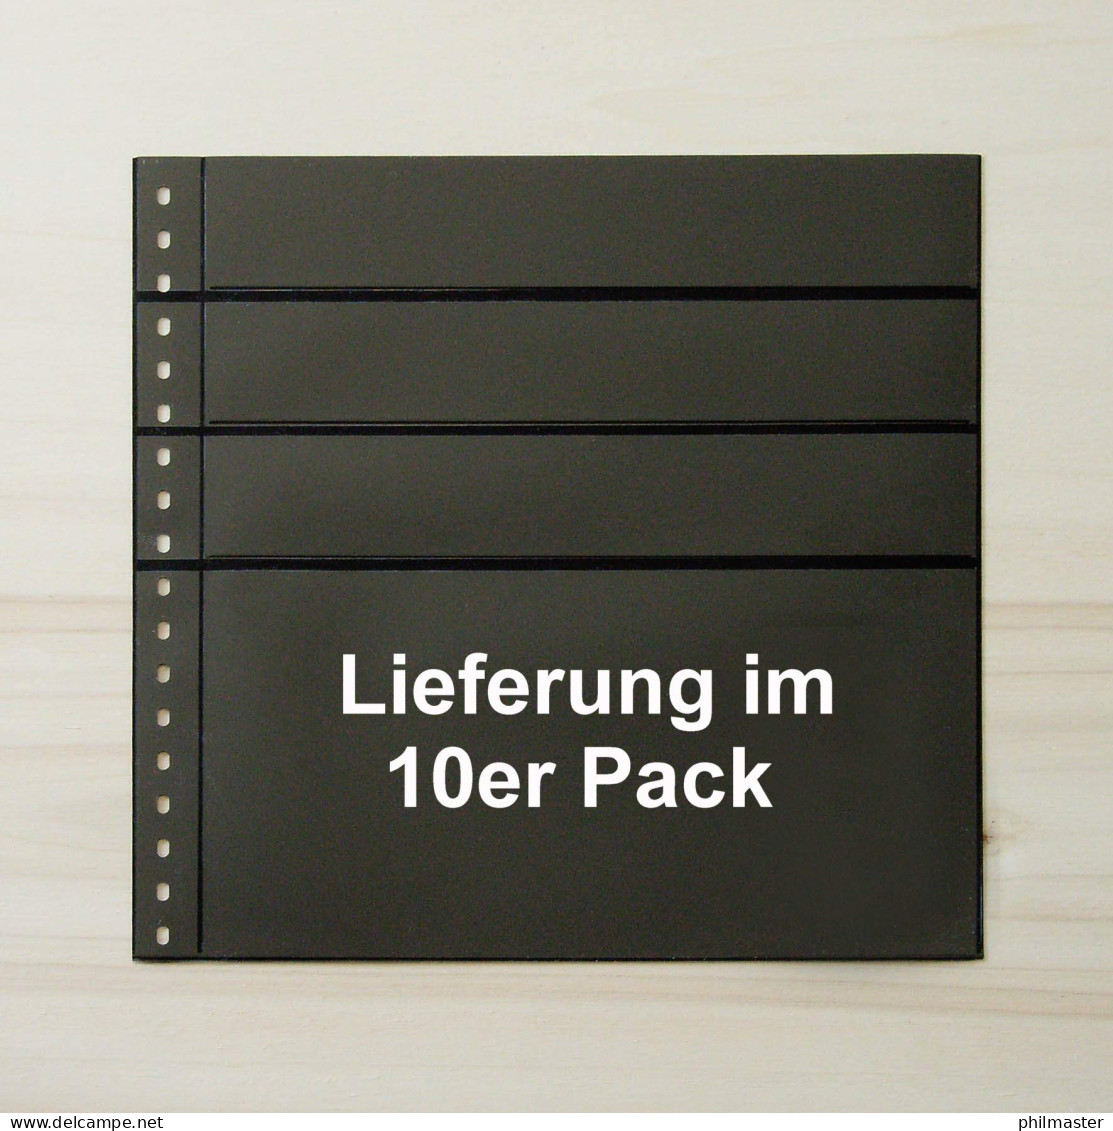 LINDNER Omnia Einsteckblatt 081 - Schwarz 3x 43 + 1x 141 Mm - 10er-Packung - Vírgenes